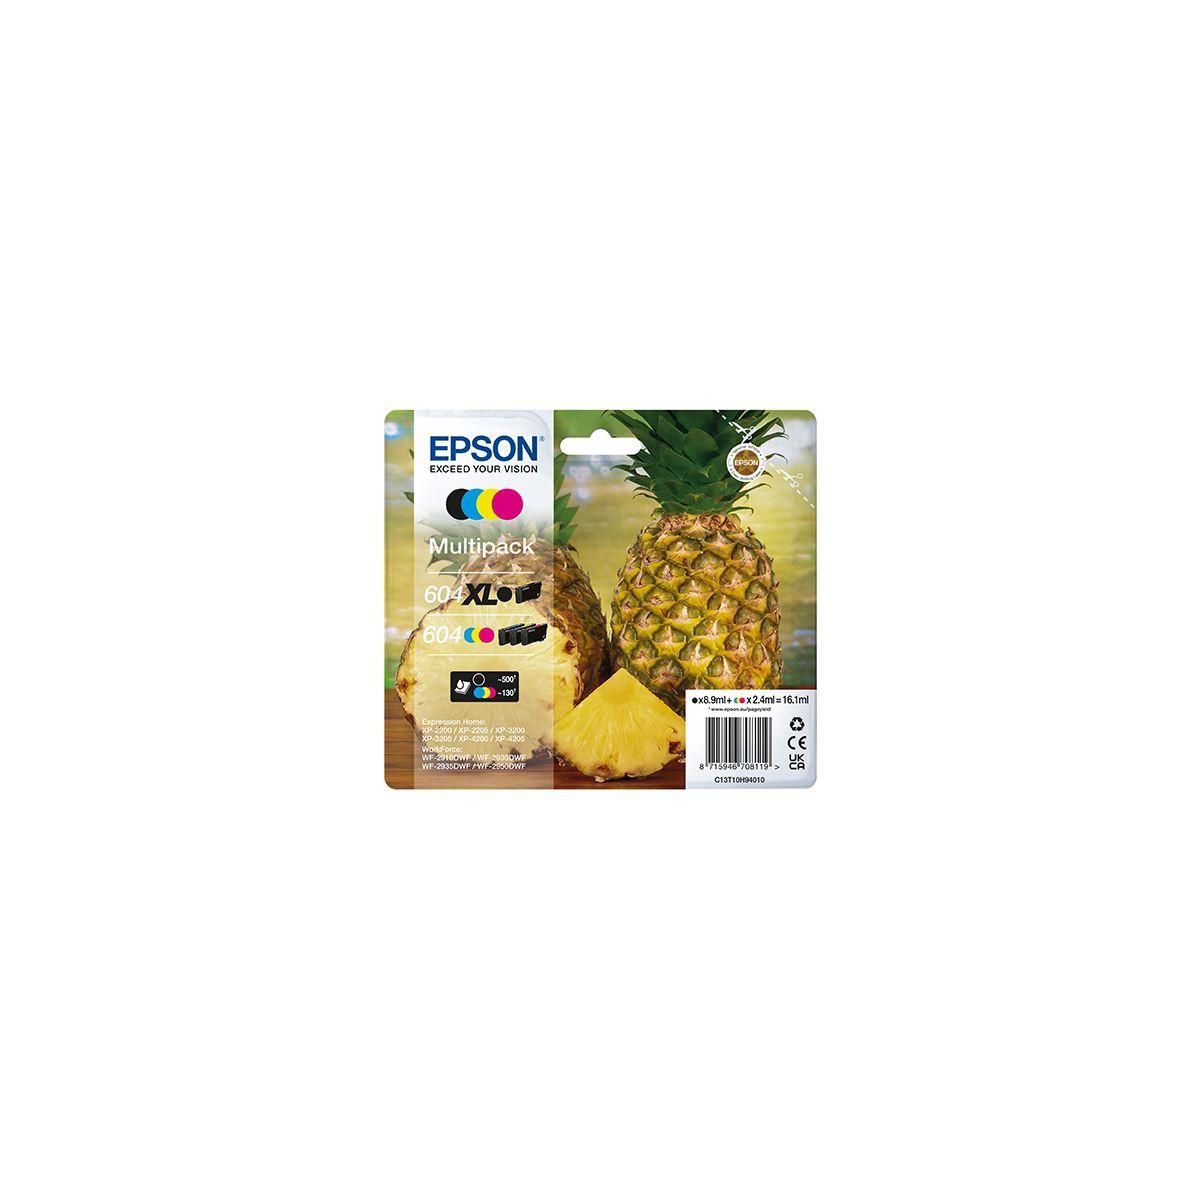  Cartouche Epson Ananas